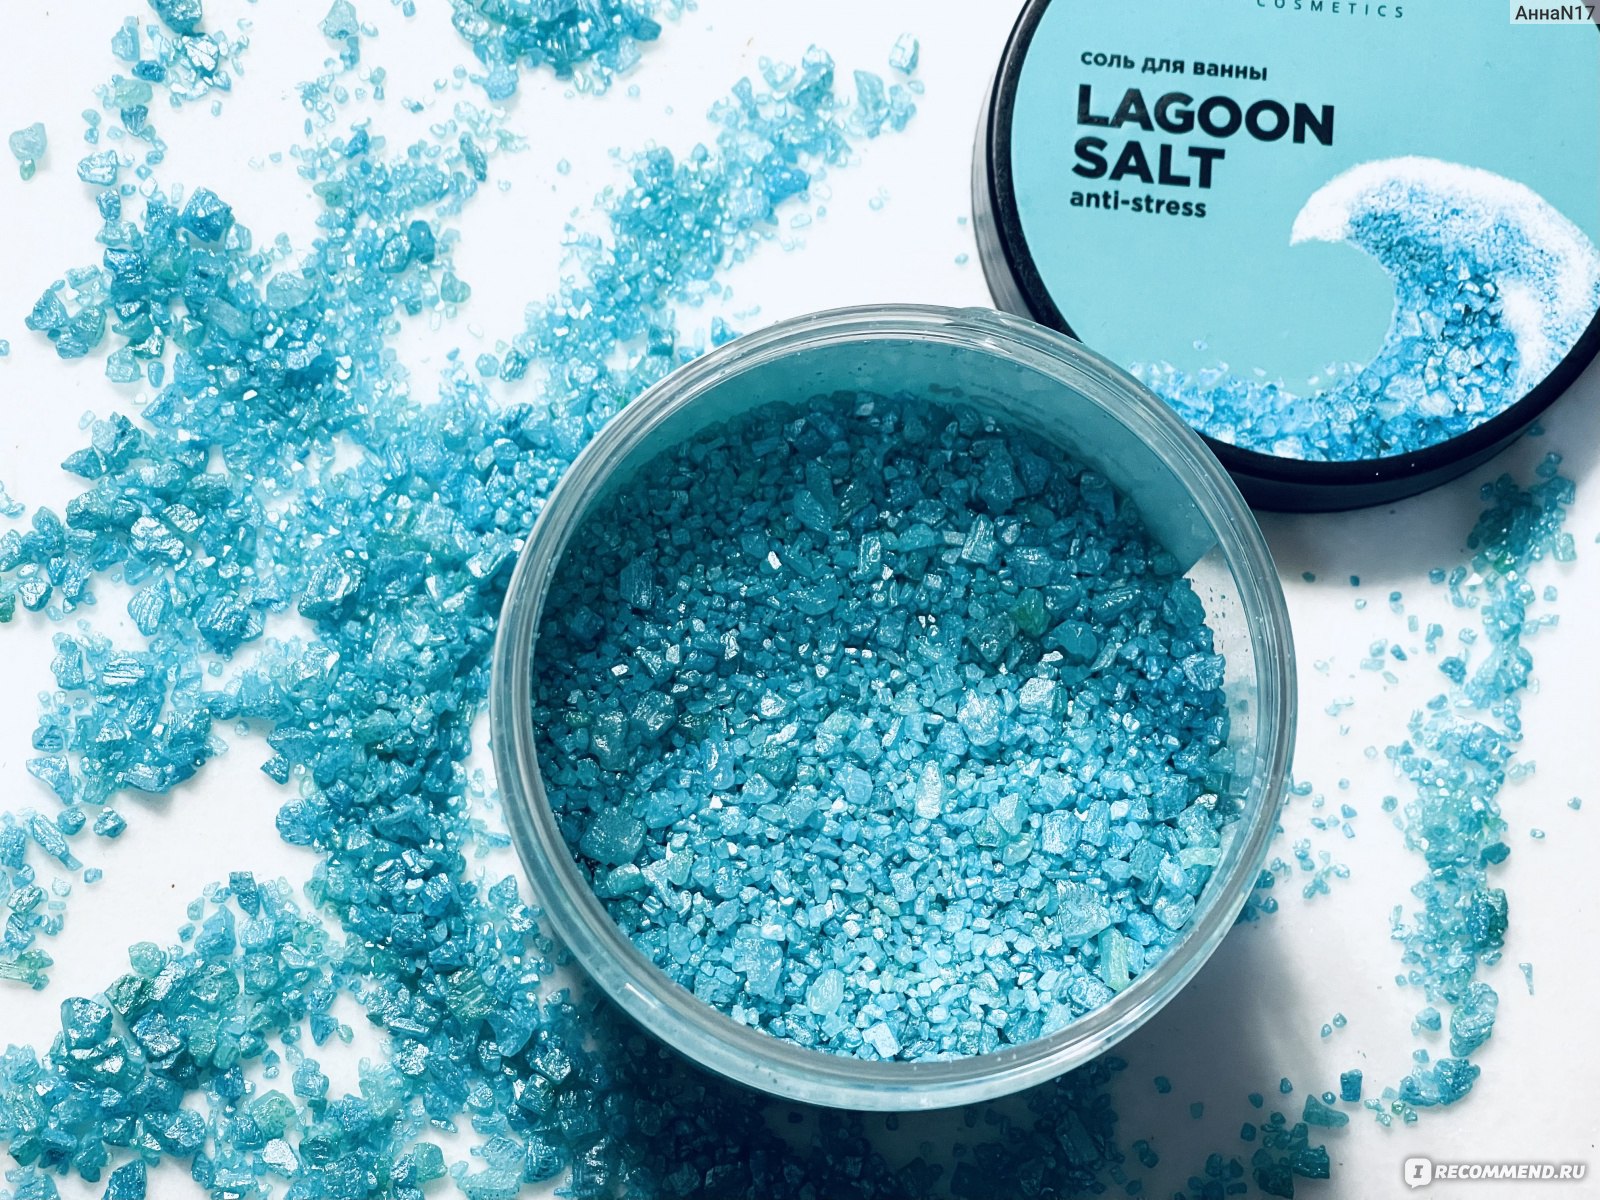 Соль для ванны расслабляющая LAGOON SALT от Letique 